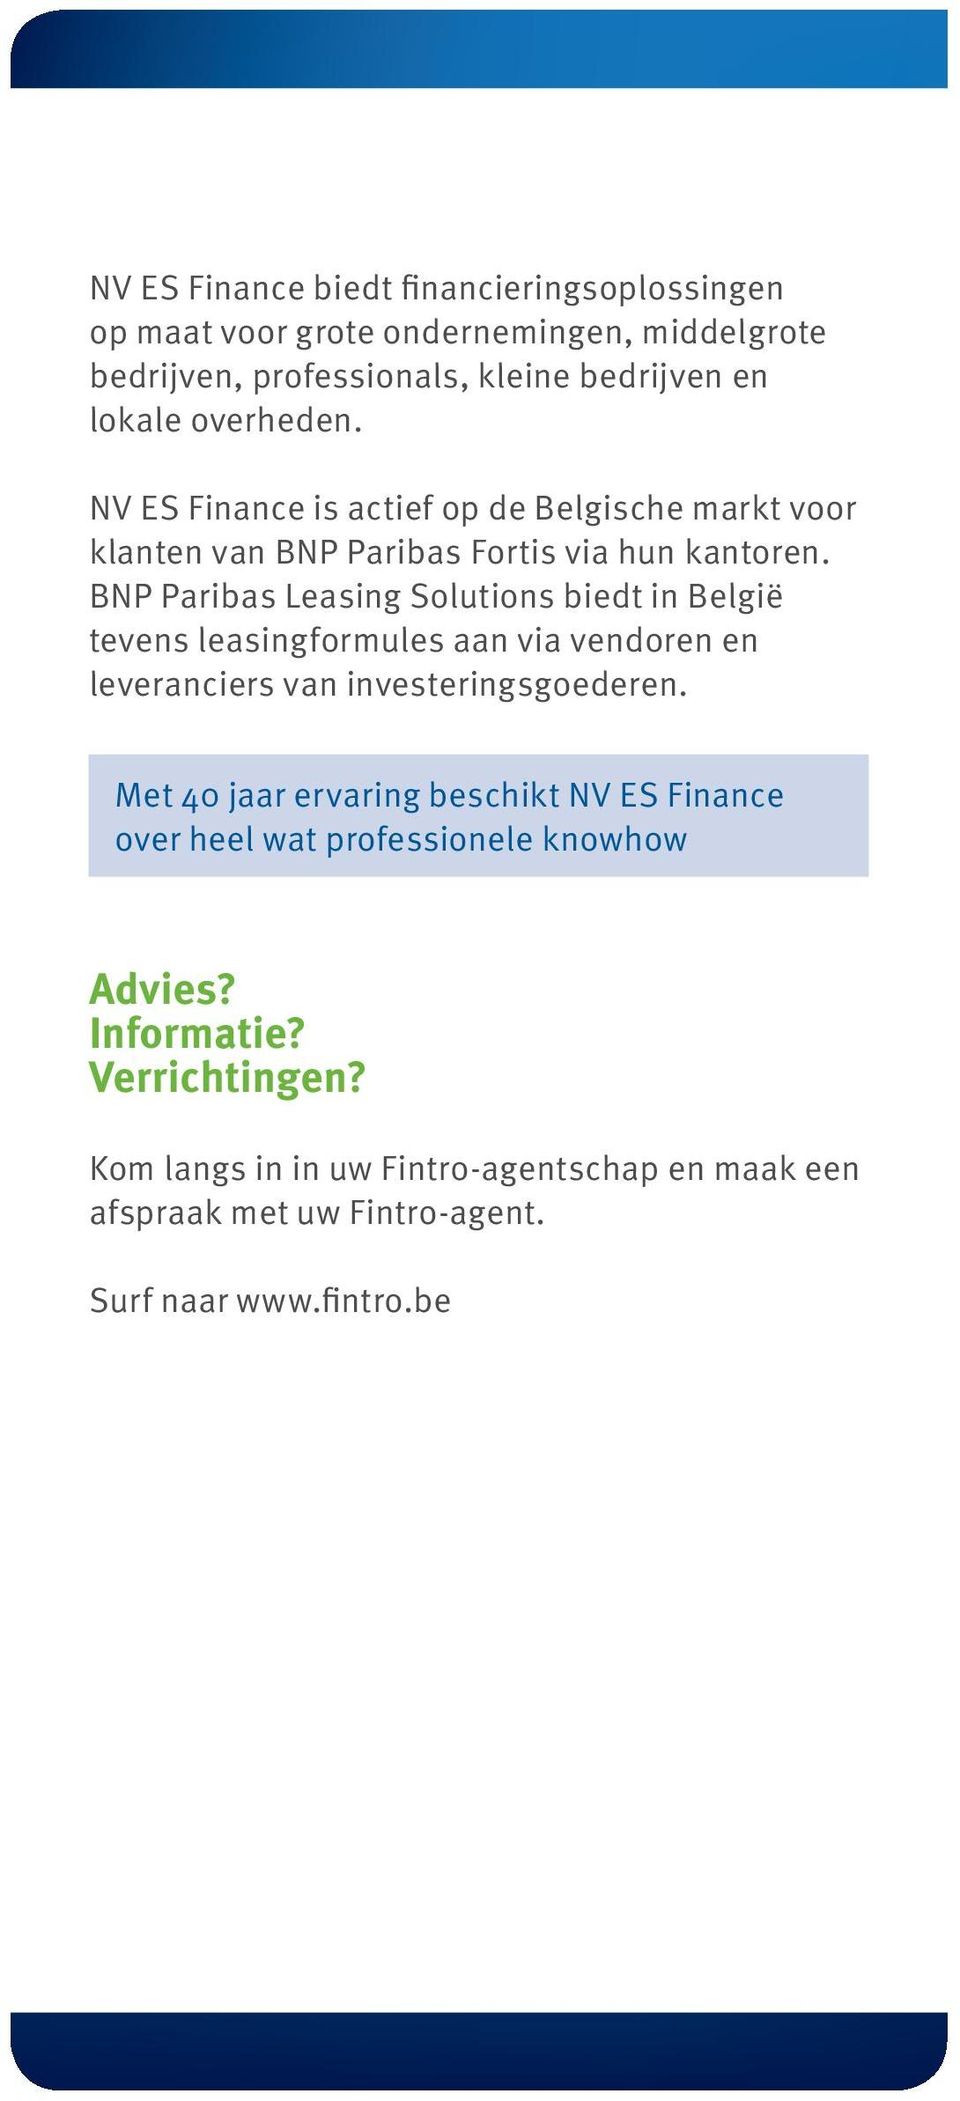 BNP Paribas Leasing Solutions biedt in België tevens leasingformules aan via vendoren en leveranciers van investeringsgoederen.